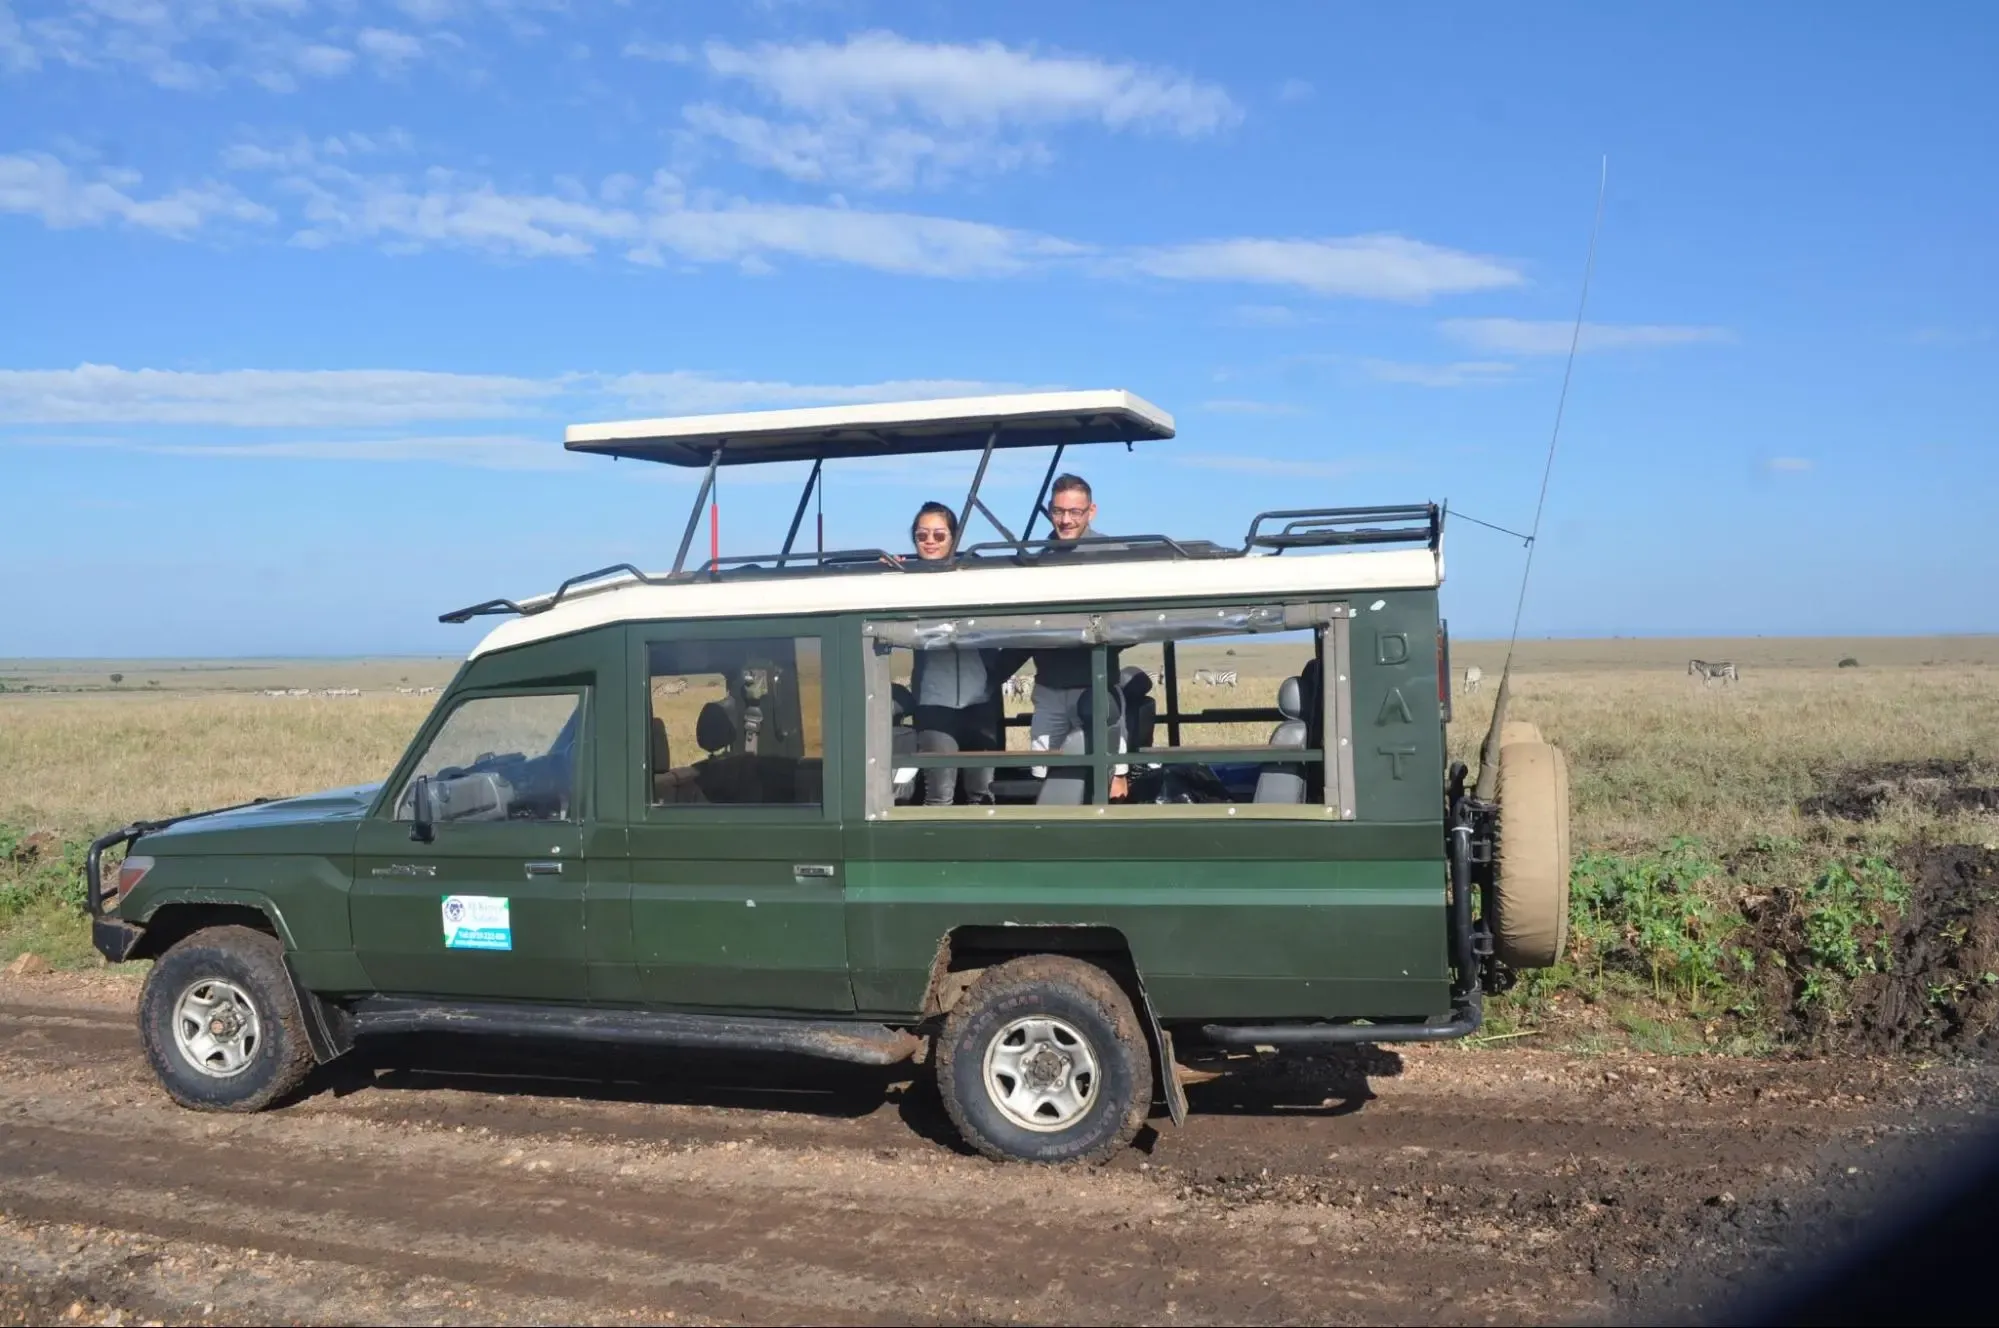 Going on a 3 day safari Kenya tour - tourists in a safari jeep in Masai Mara